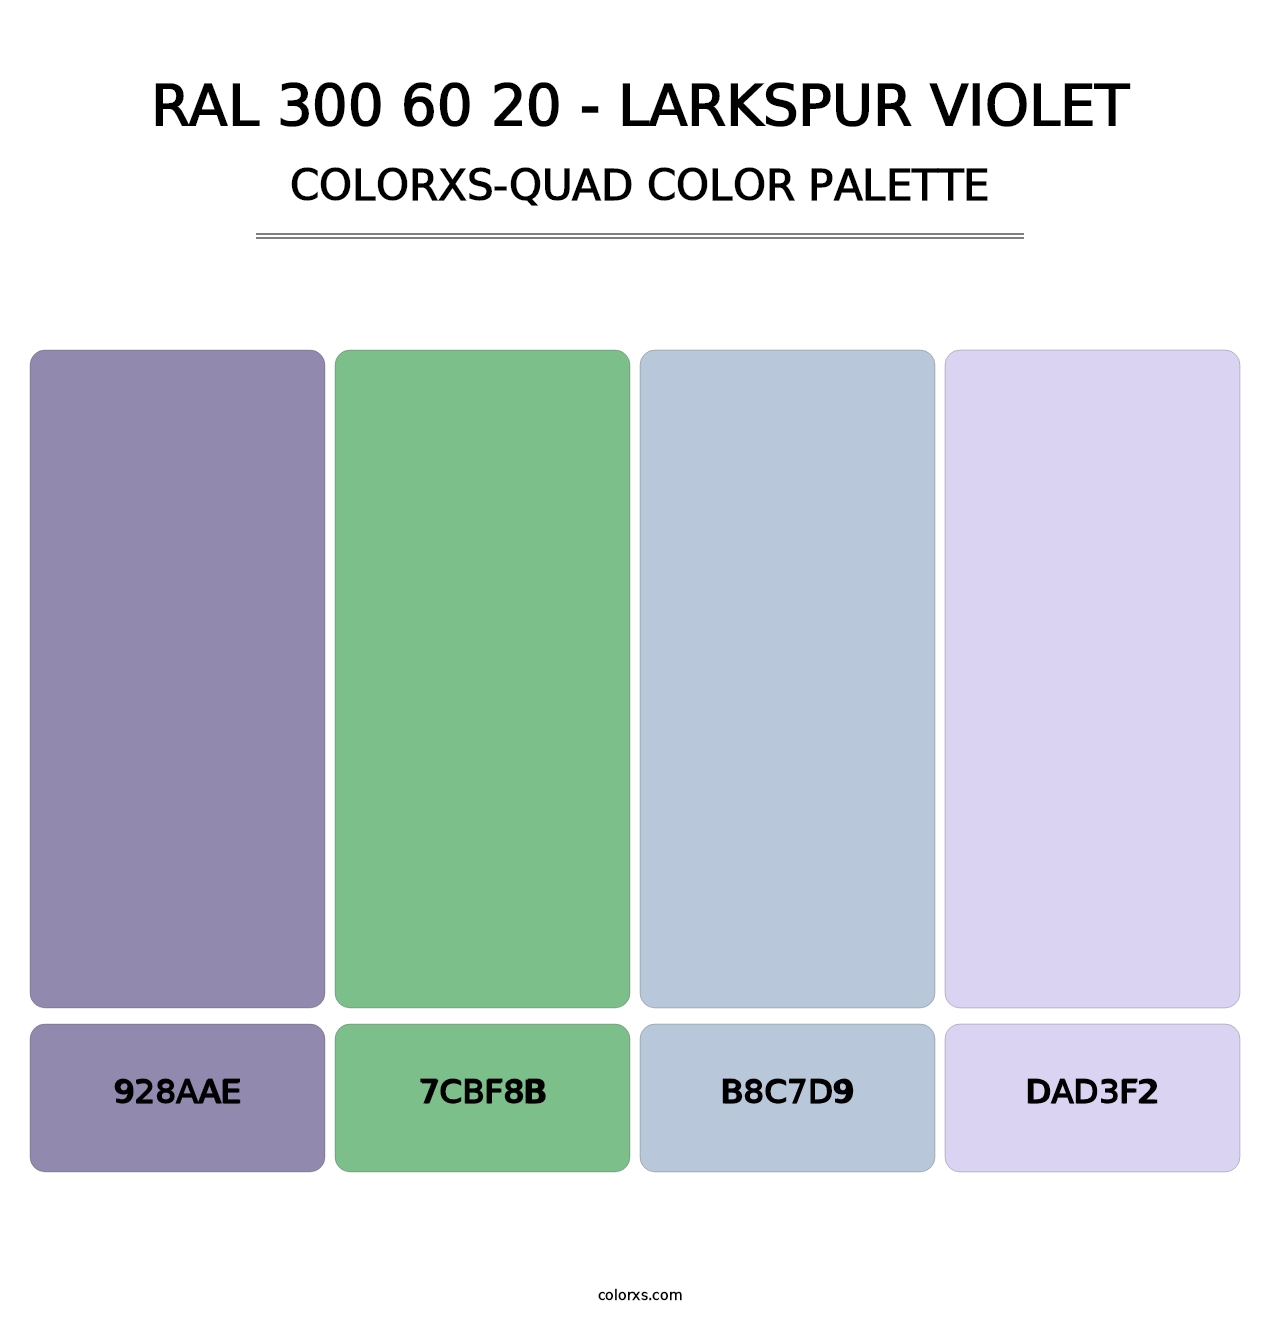 RAL 300 60 20 - Larkspur Violet - Colorxs Quad Palette